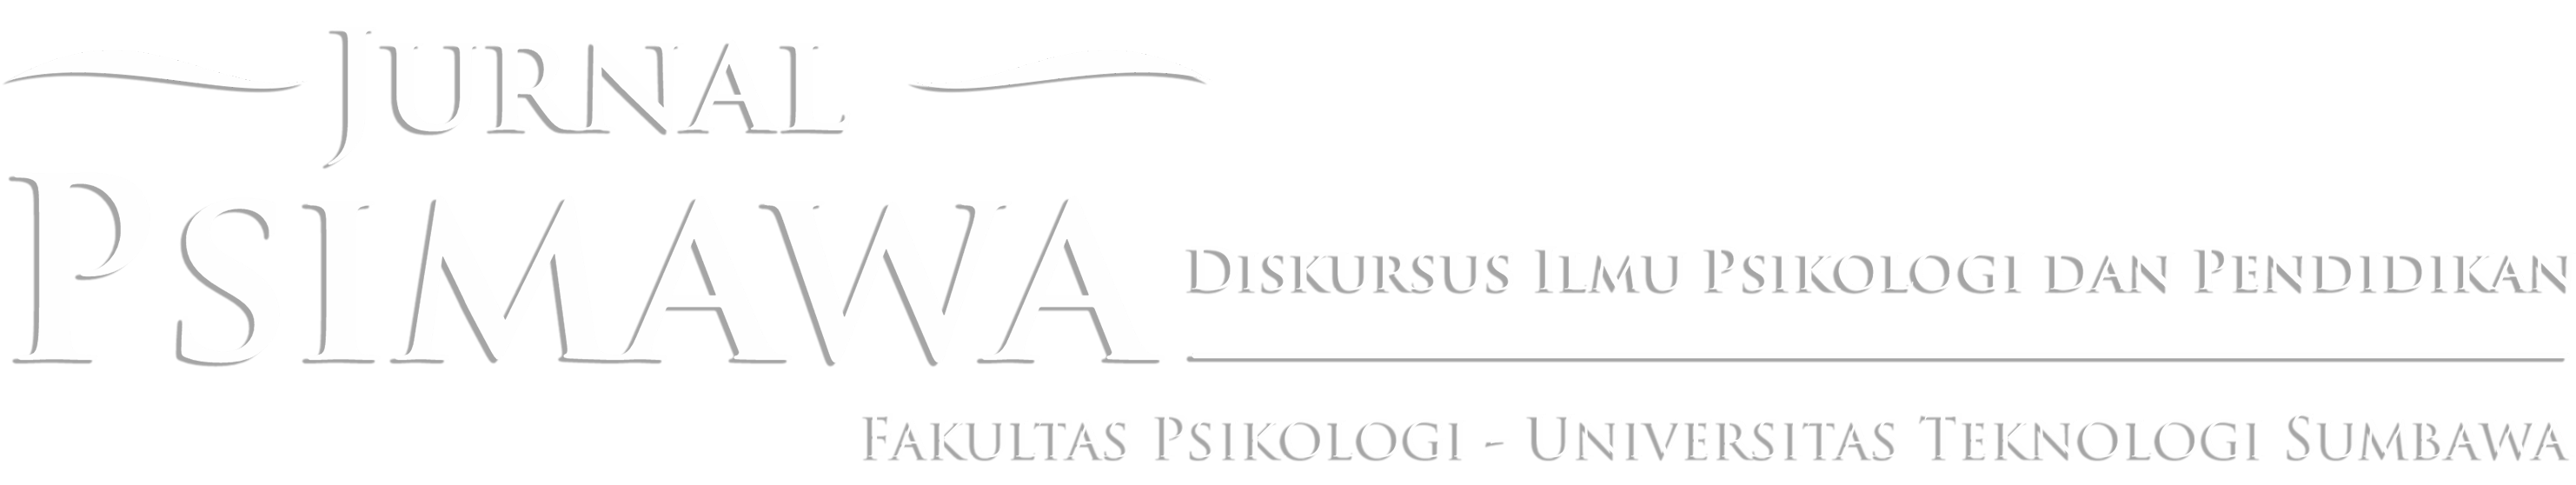 DISKURSUS ILMU PSIKOLOGI & PENDIDIKAN 